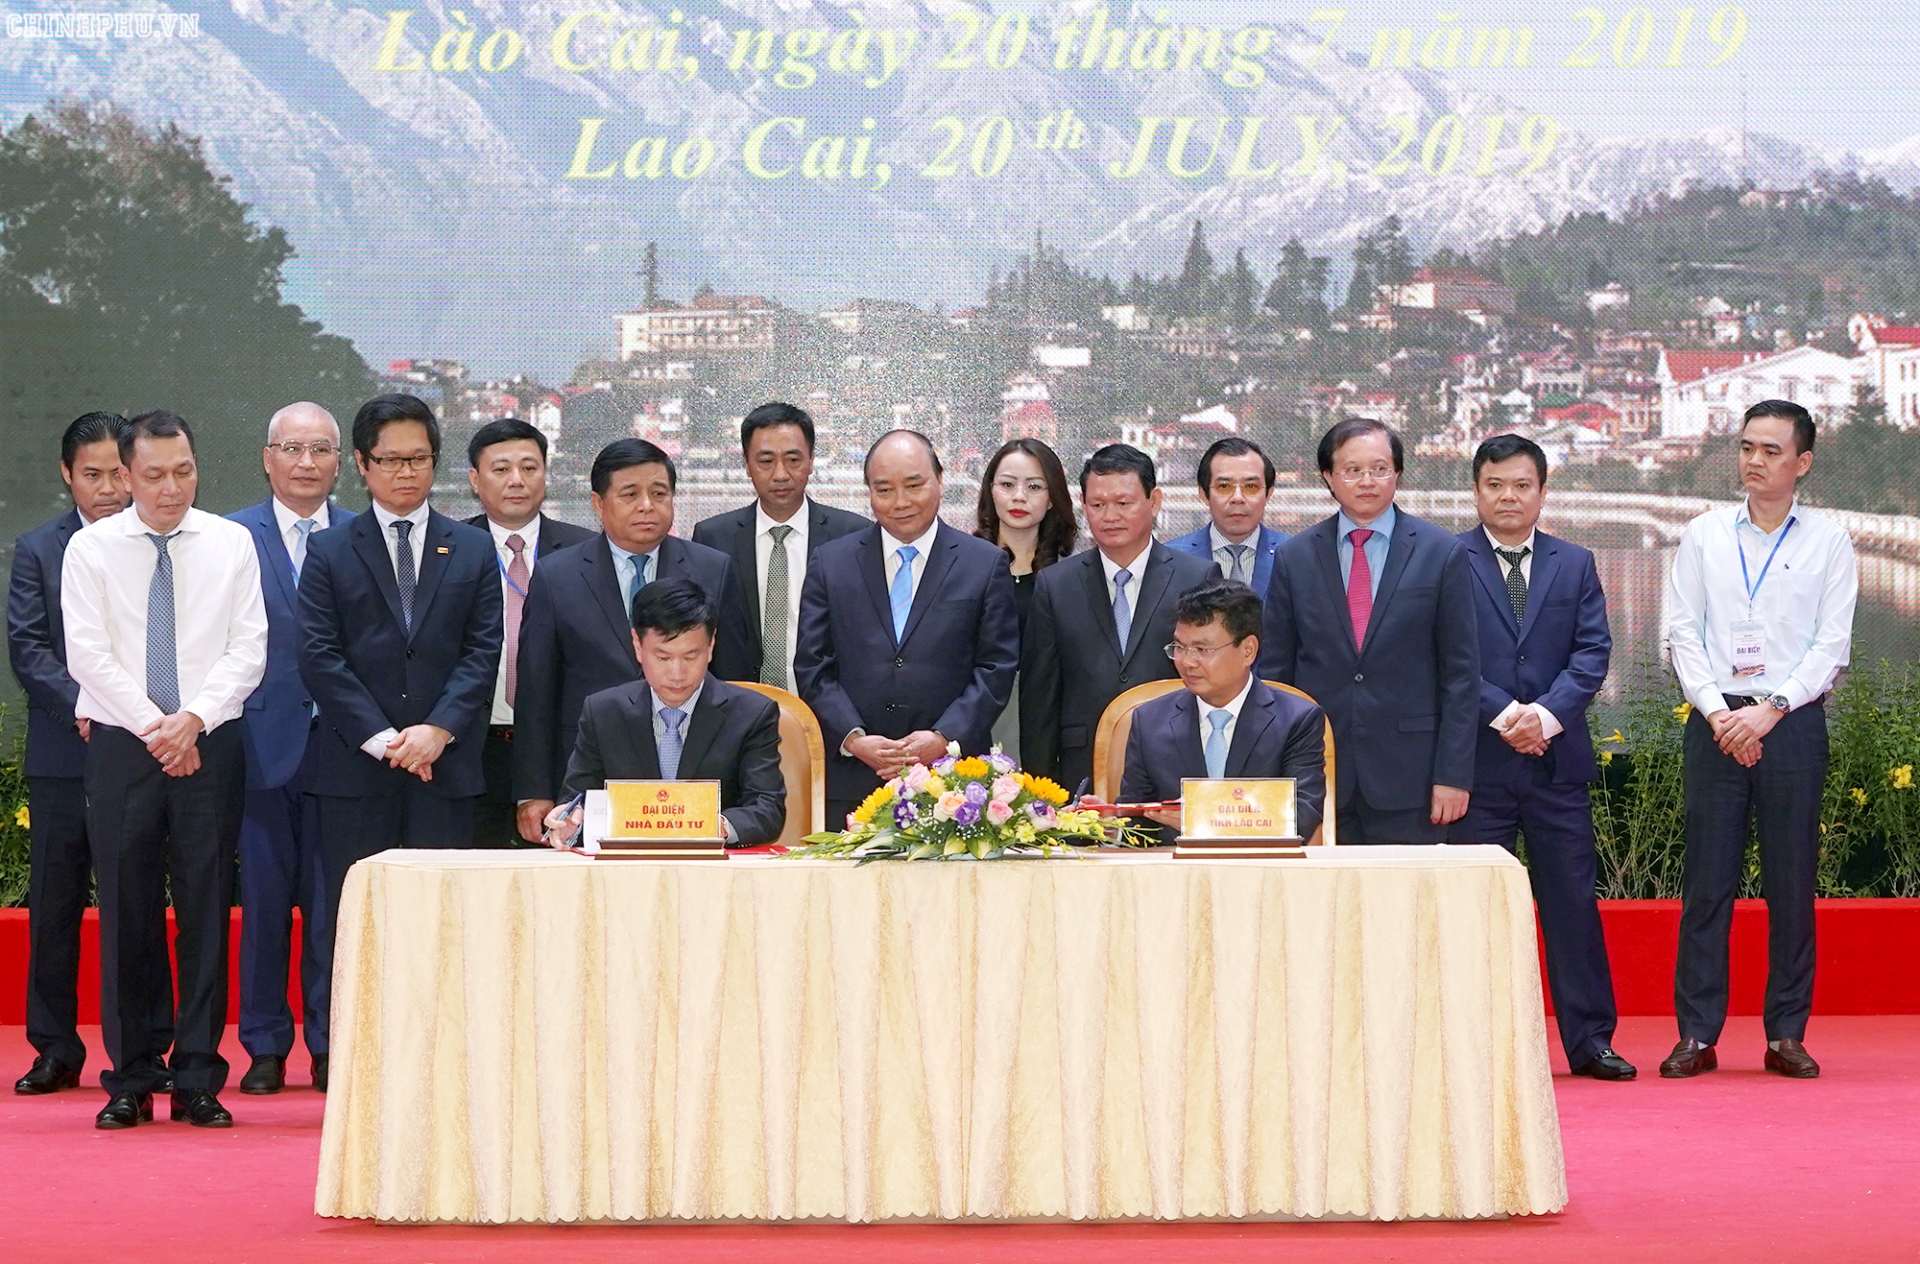 Lao Cai – an emerging destination of investors